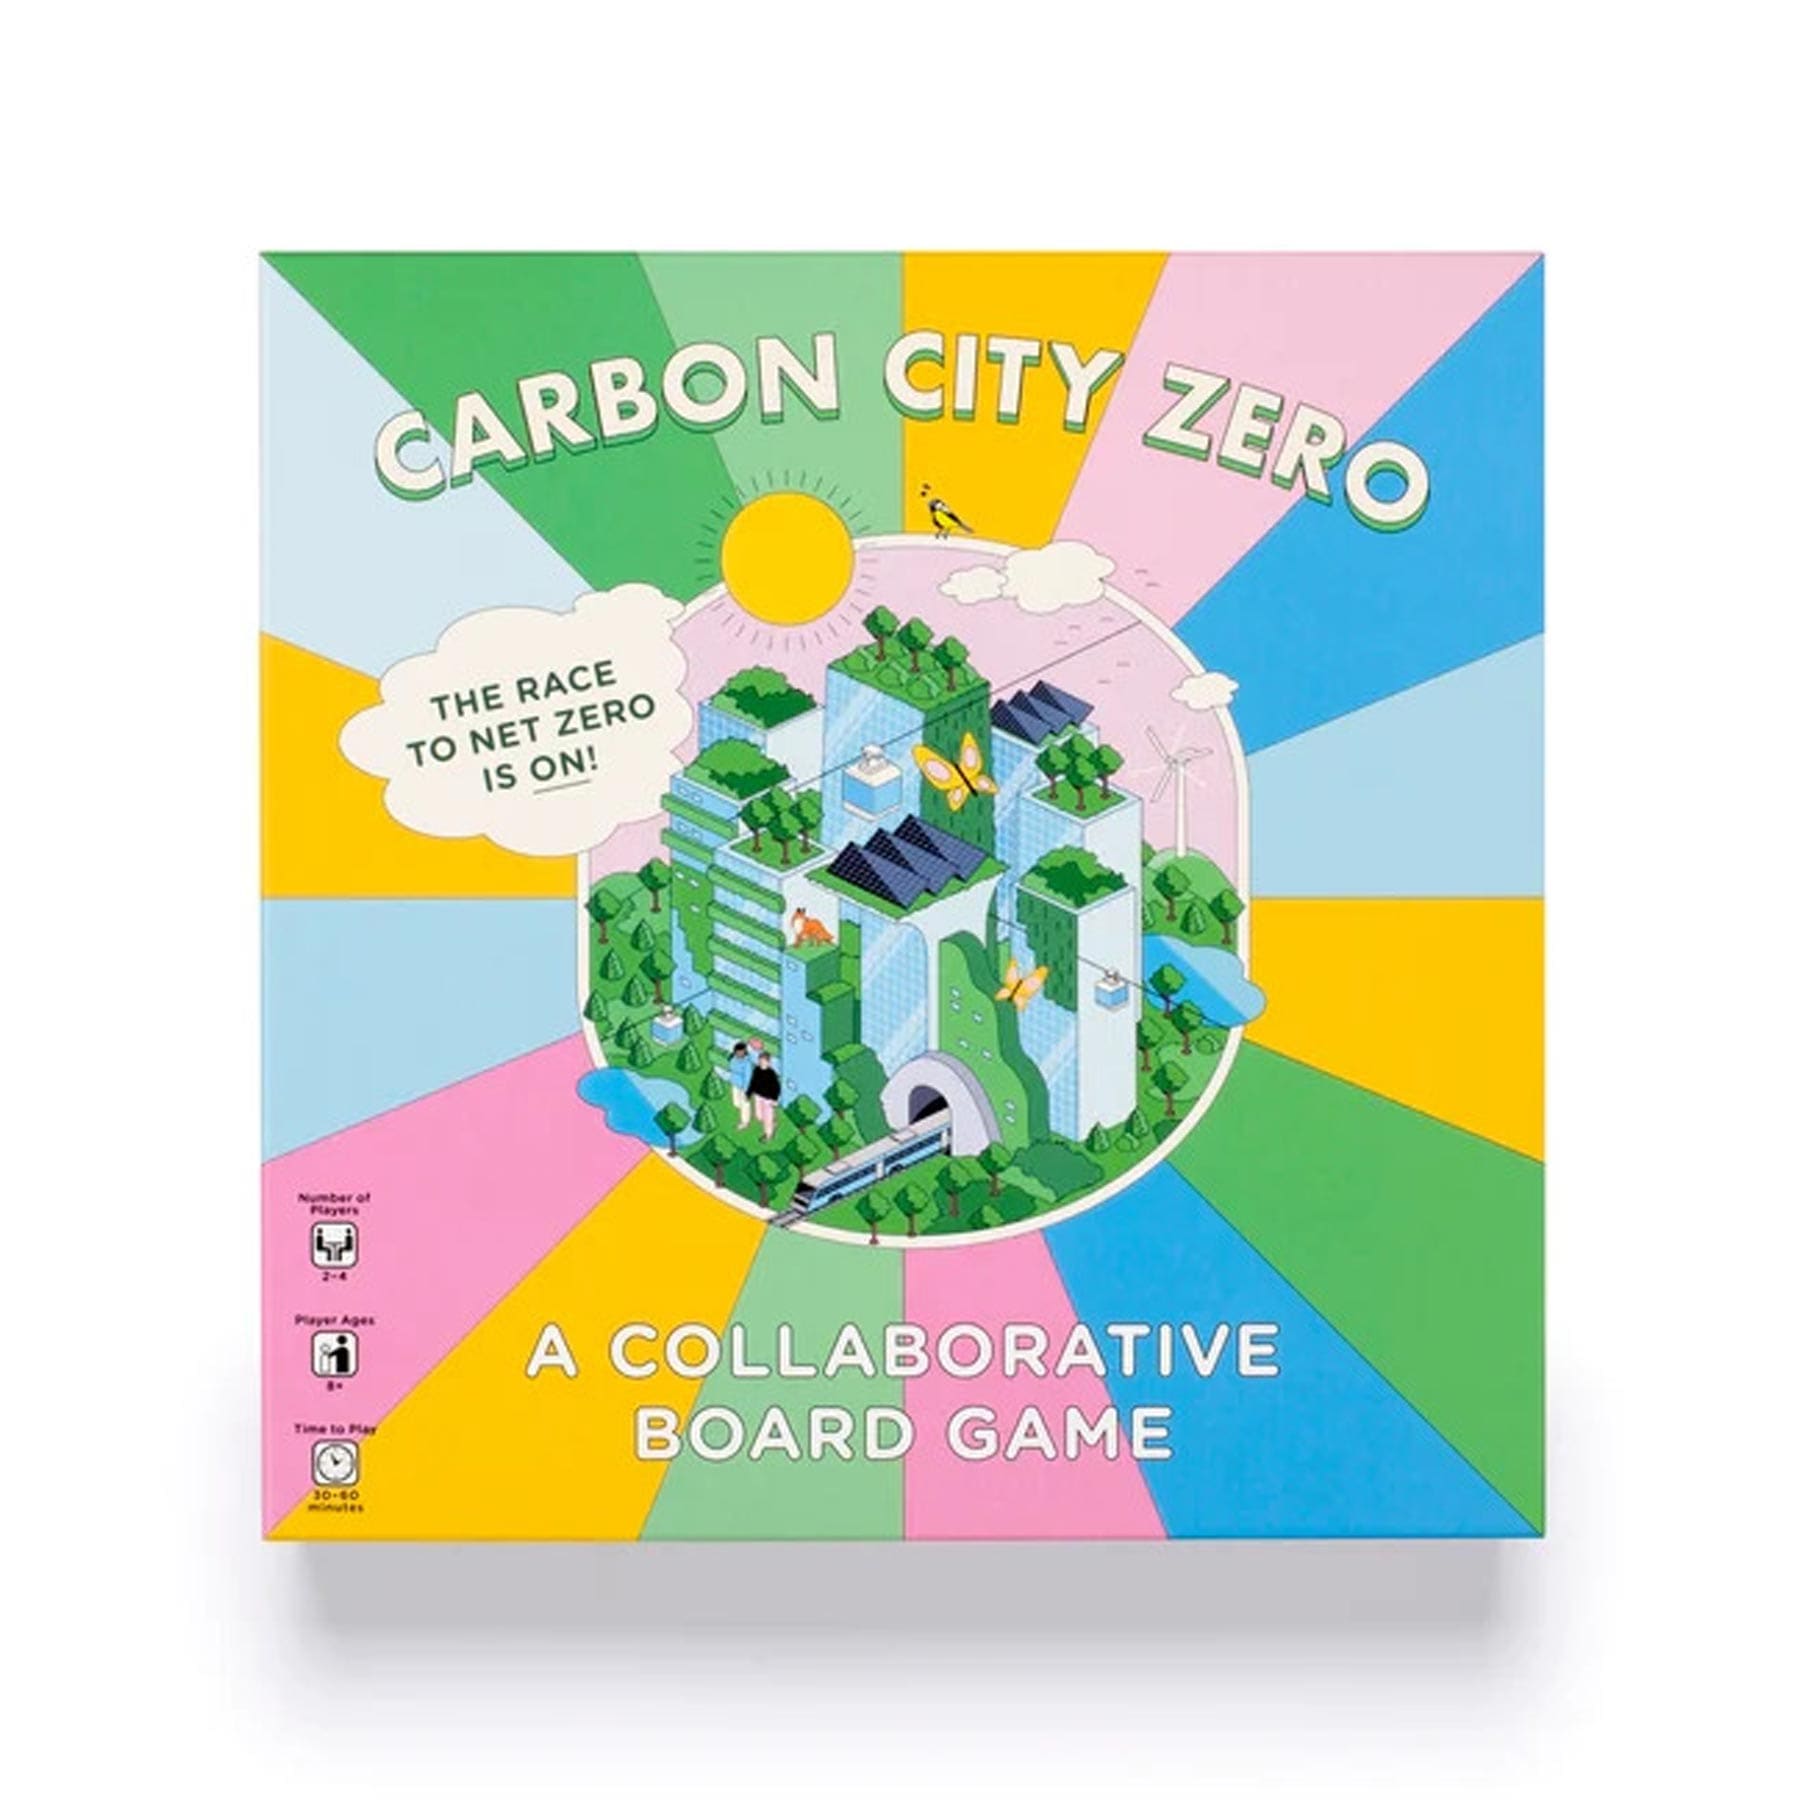 Carbon city zero board game